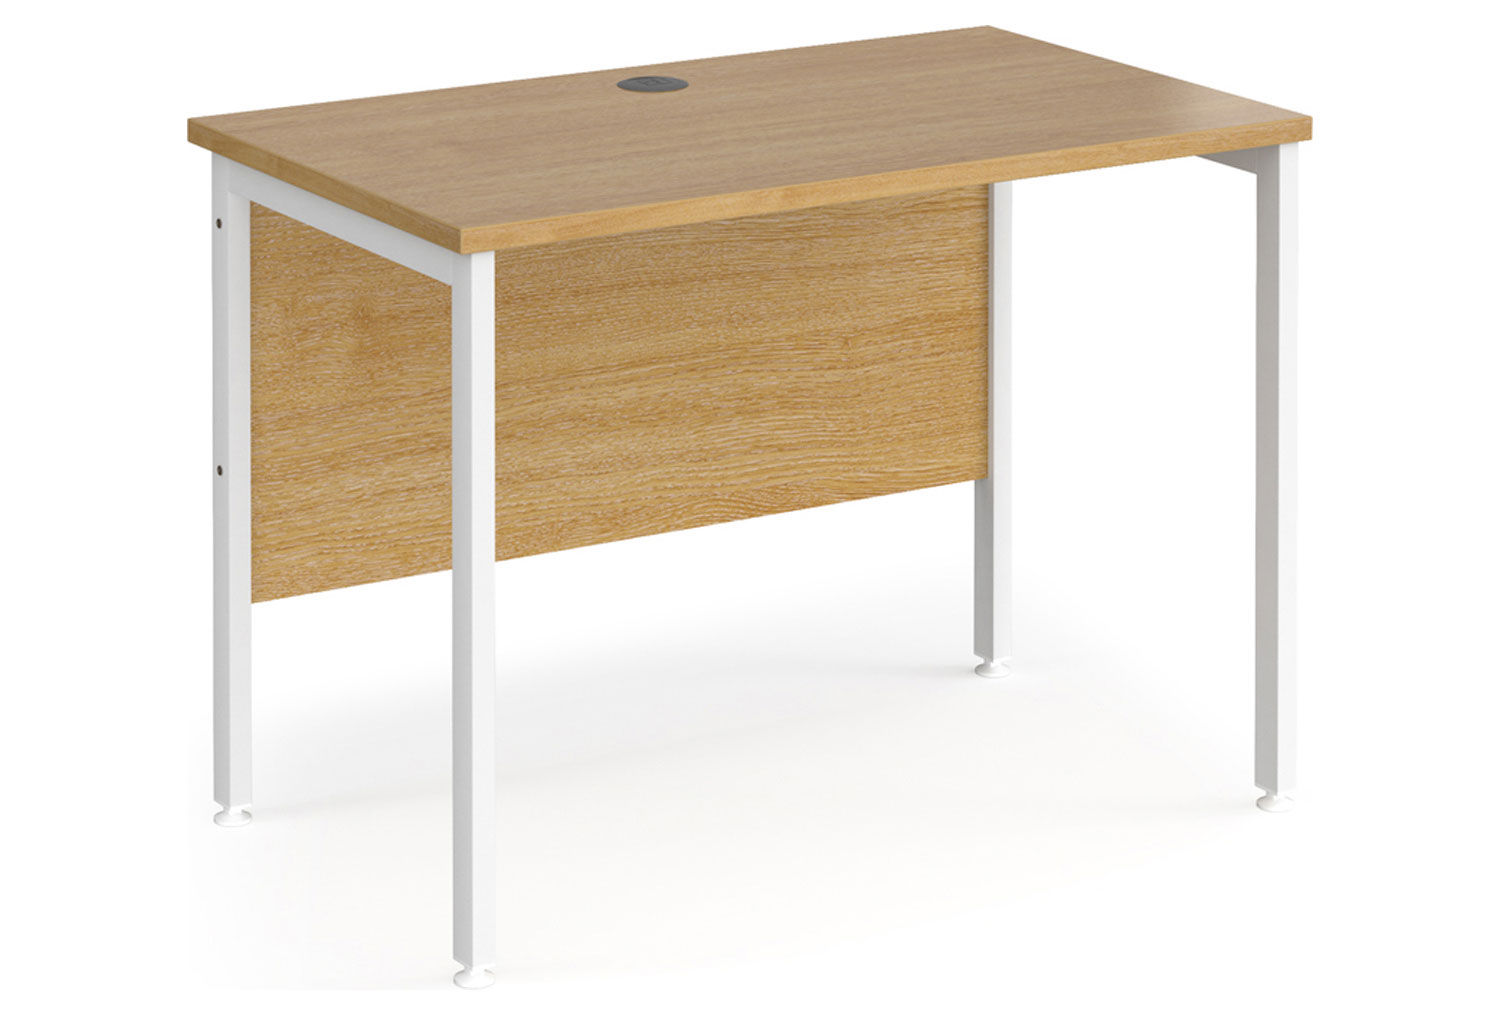 Value Line Deluxe H-Leg Narrow Rectangular Office Desk (White Legs), 100wx60dx73h (cm), Oak